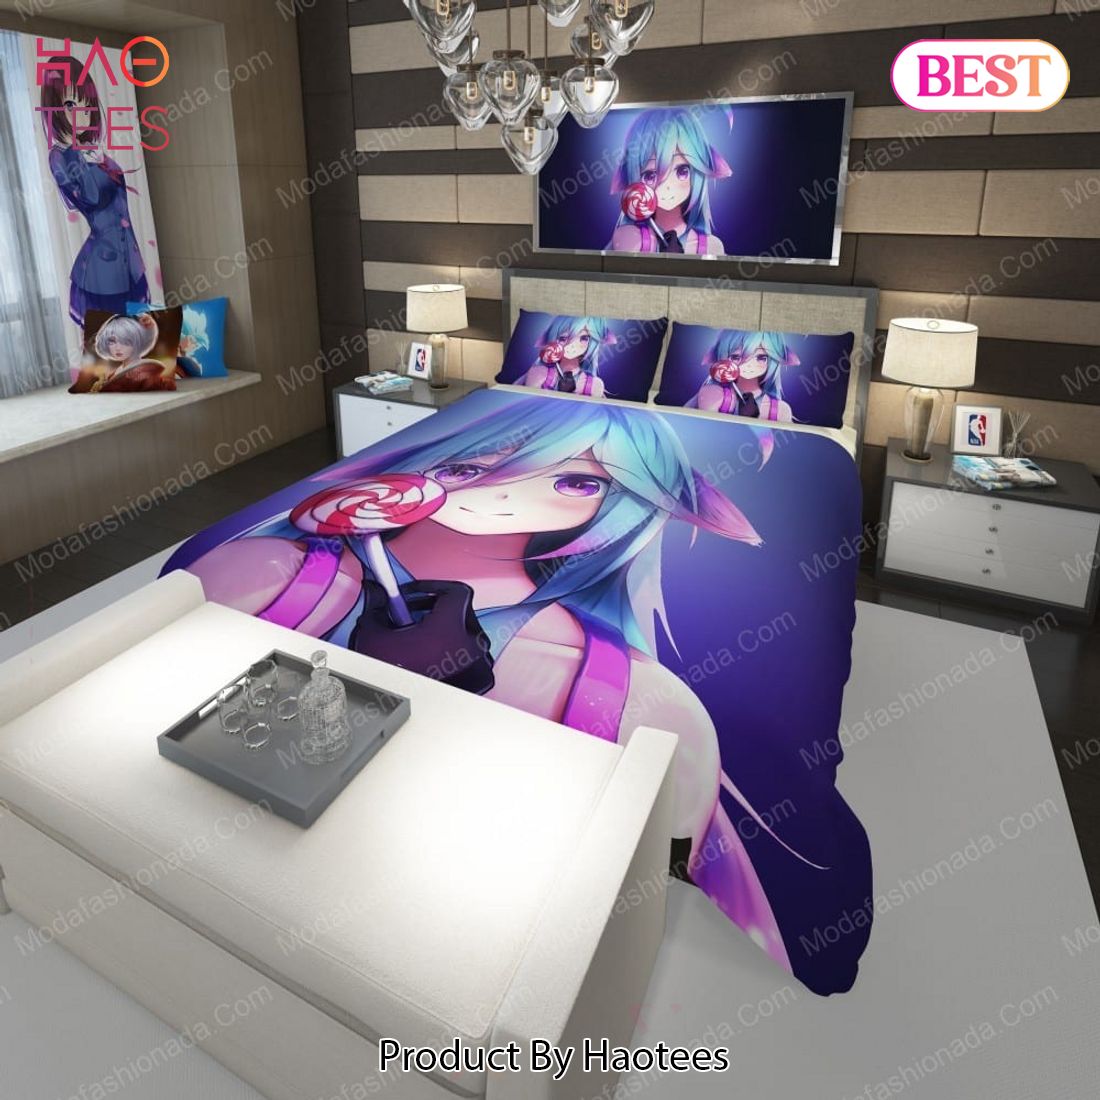 Buy Lollipop Girl Anime 101 Bedding Sets Bed Sets, Bedroom Sets, Comforter Sets, Duvet Cover, Bedspread